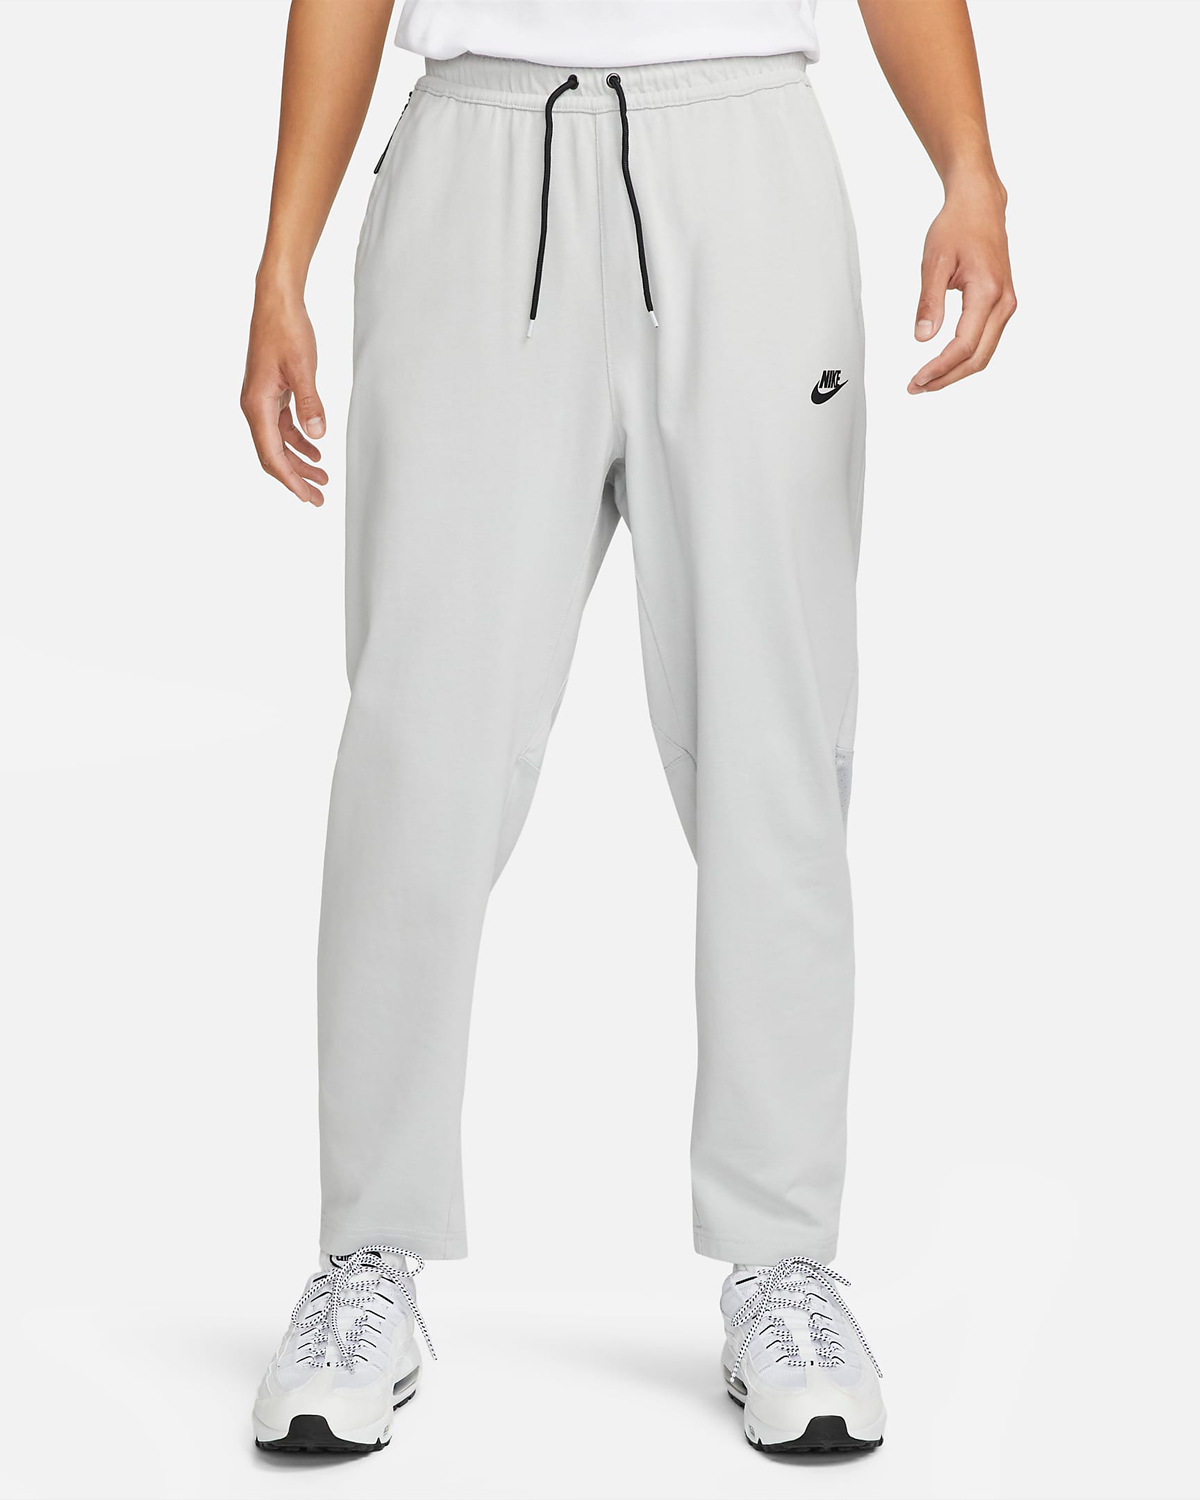 Nike-Sportswear-Pants-Grey-Fog